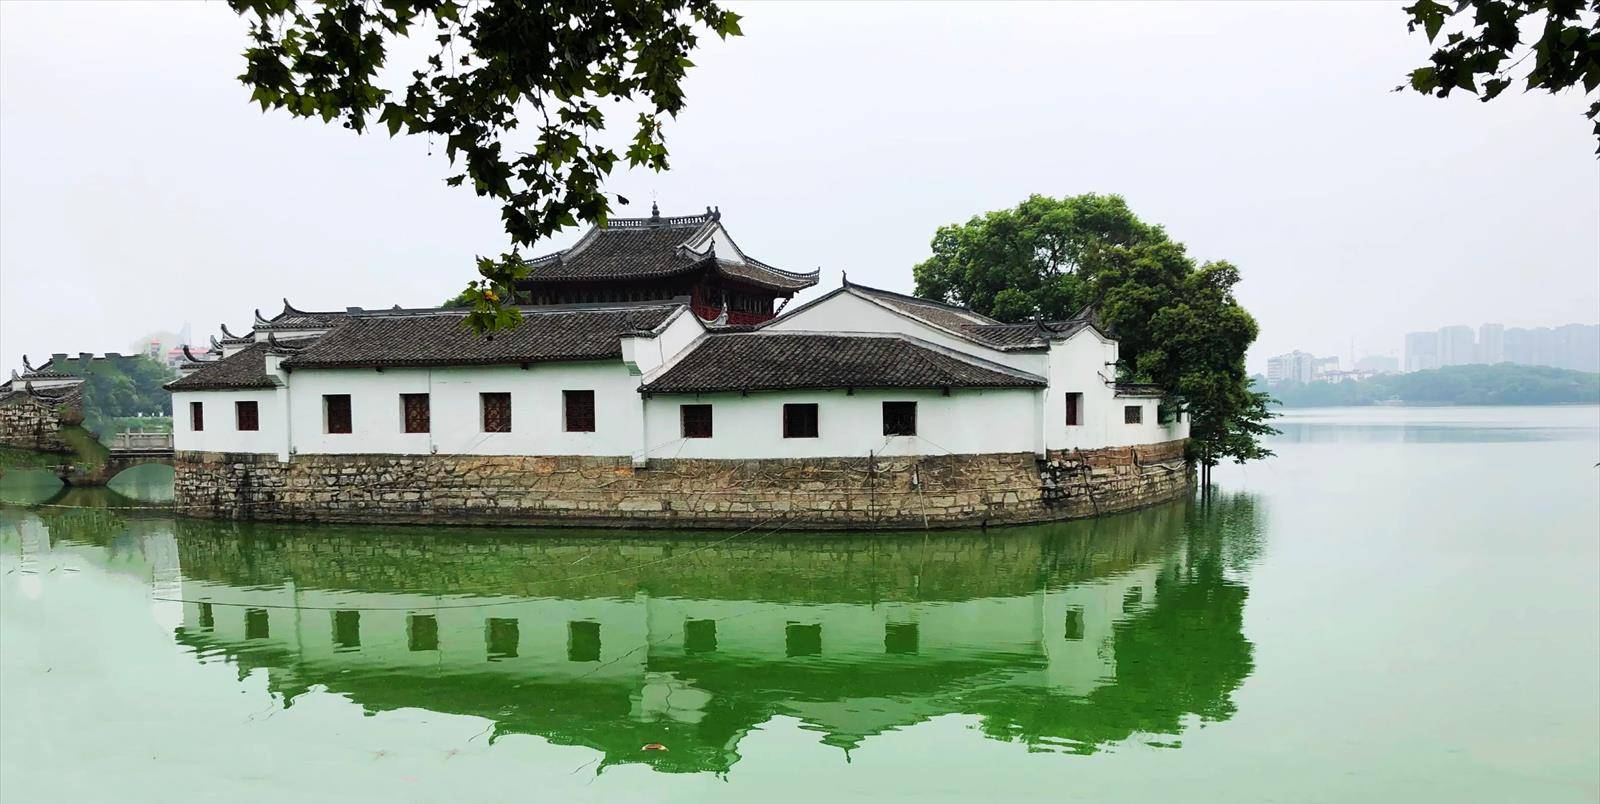 九江甘棠湖,千年美景烟水亭,镶嵌在繁华闹市的璀璨明珠